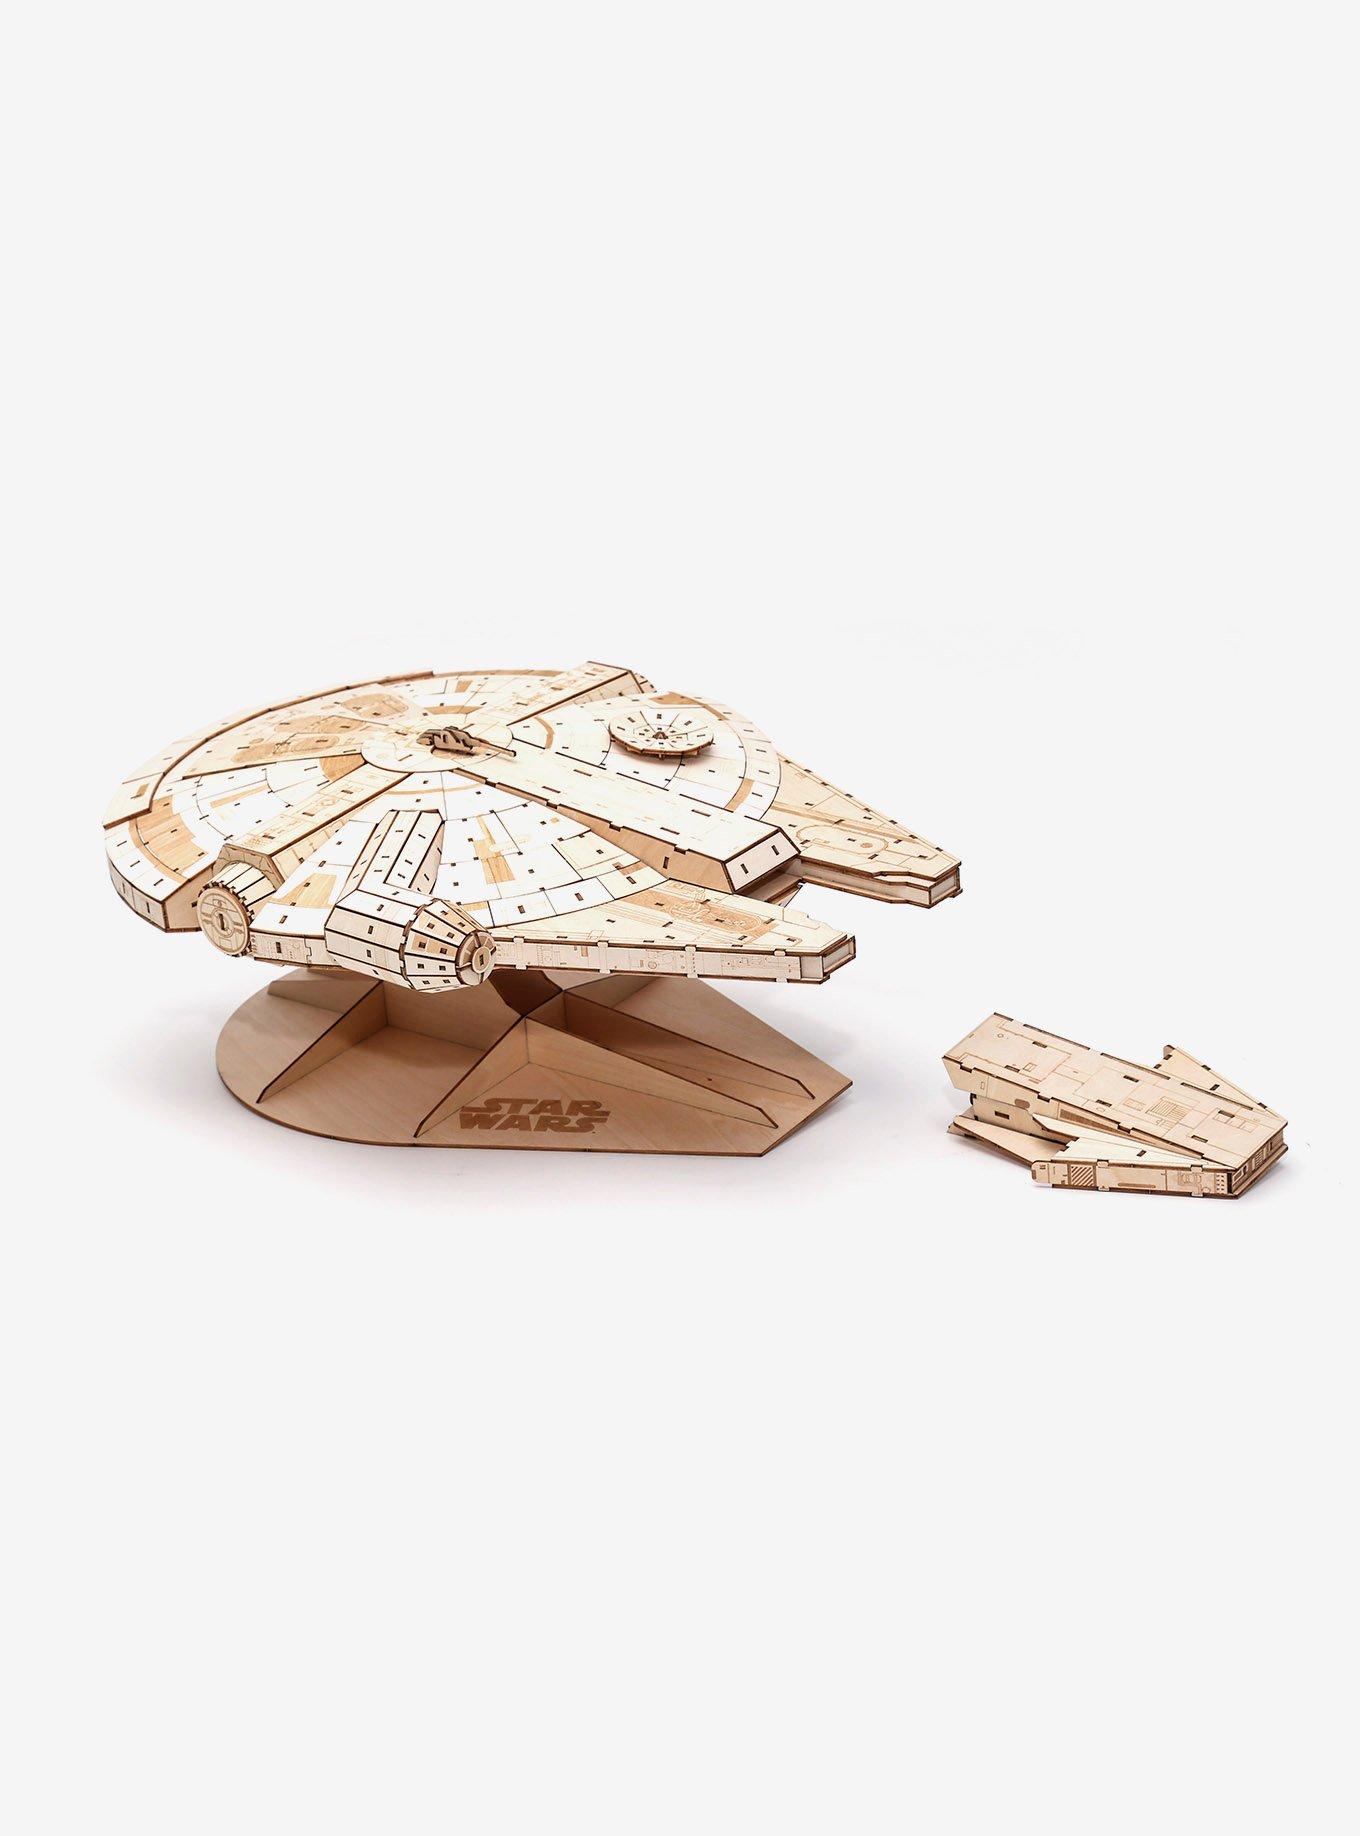 Incredibuilds Star Wars Millennium Falcon Collectors Edition Book & 3D Wood Model Kit, , hi-res